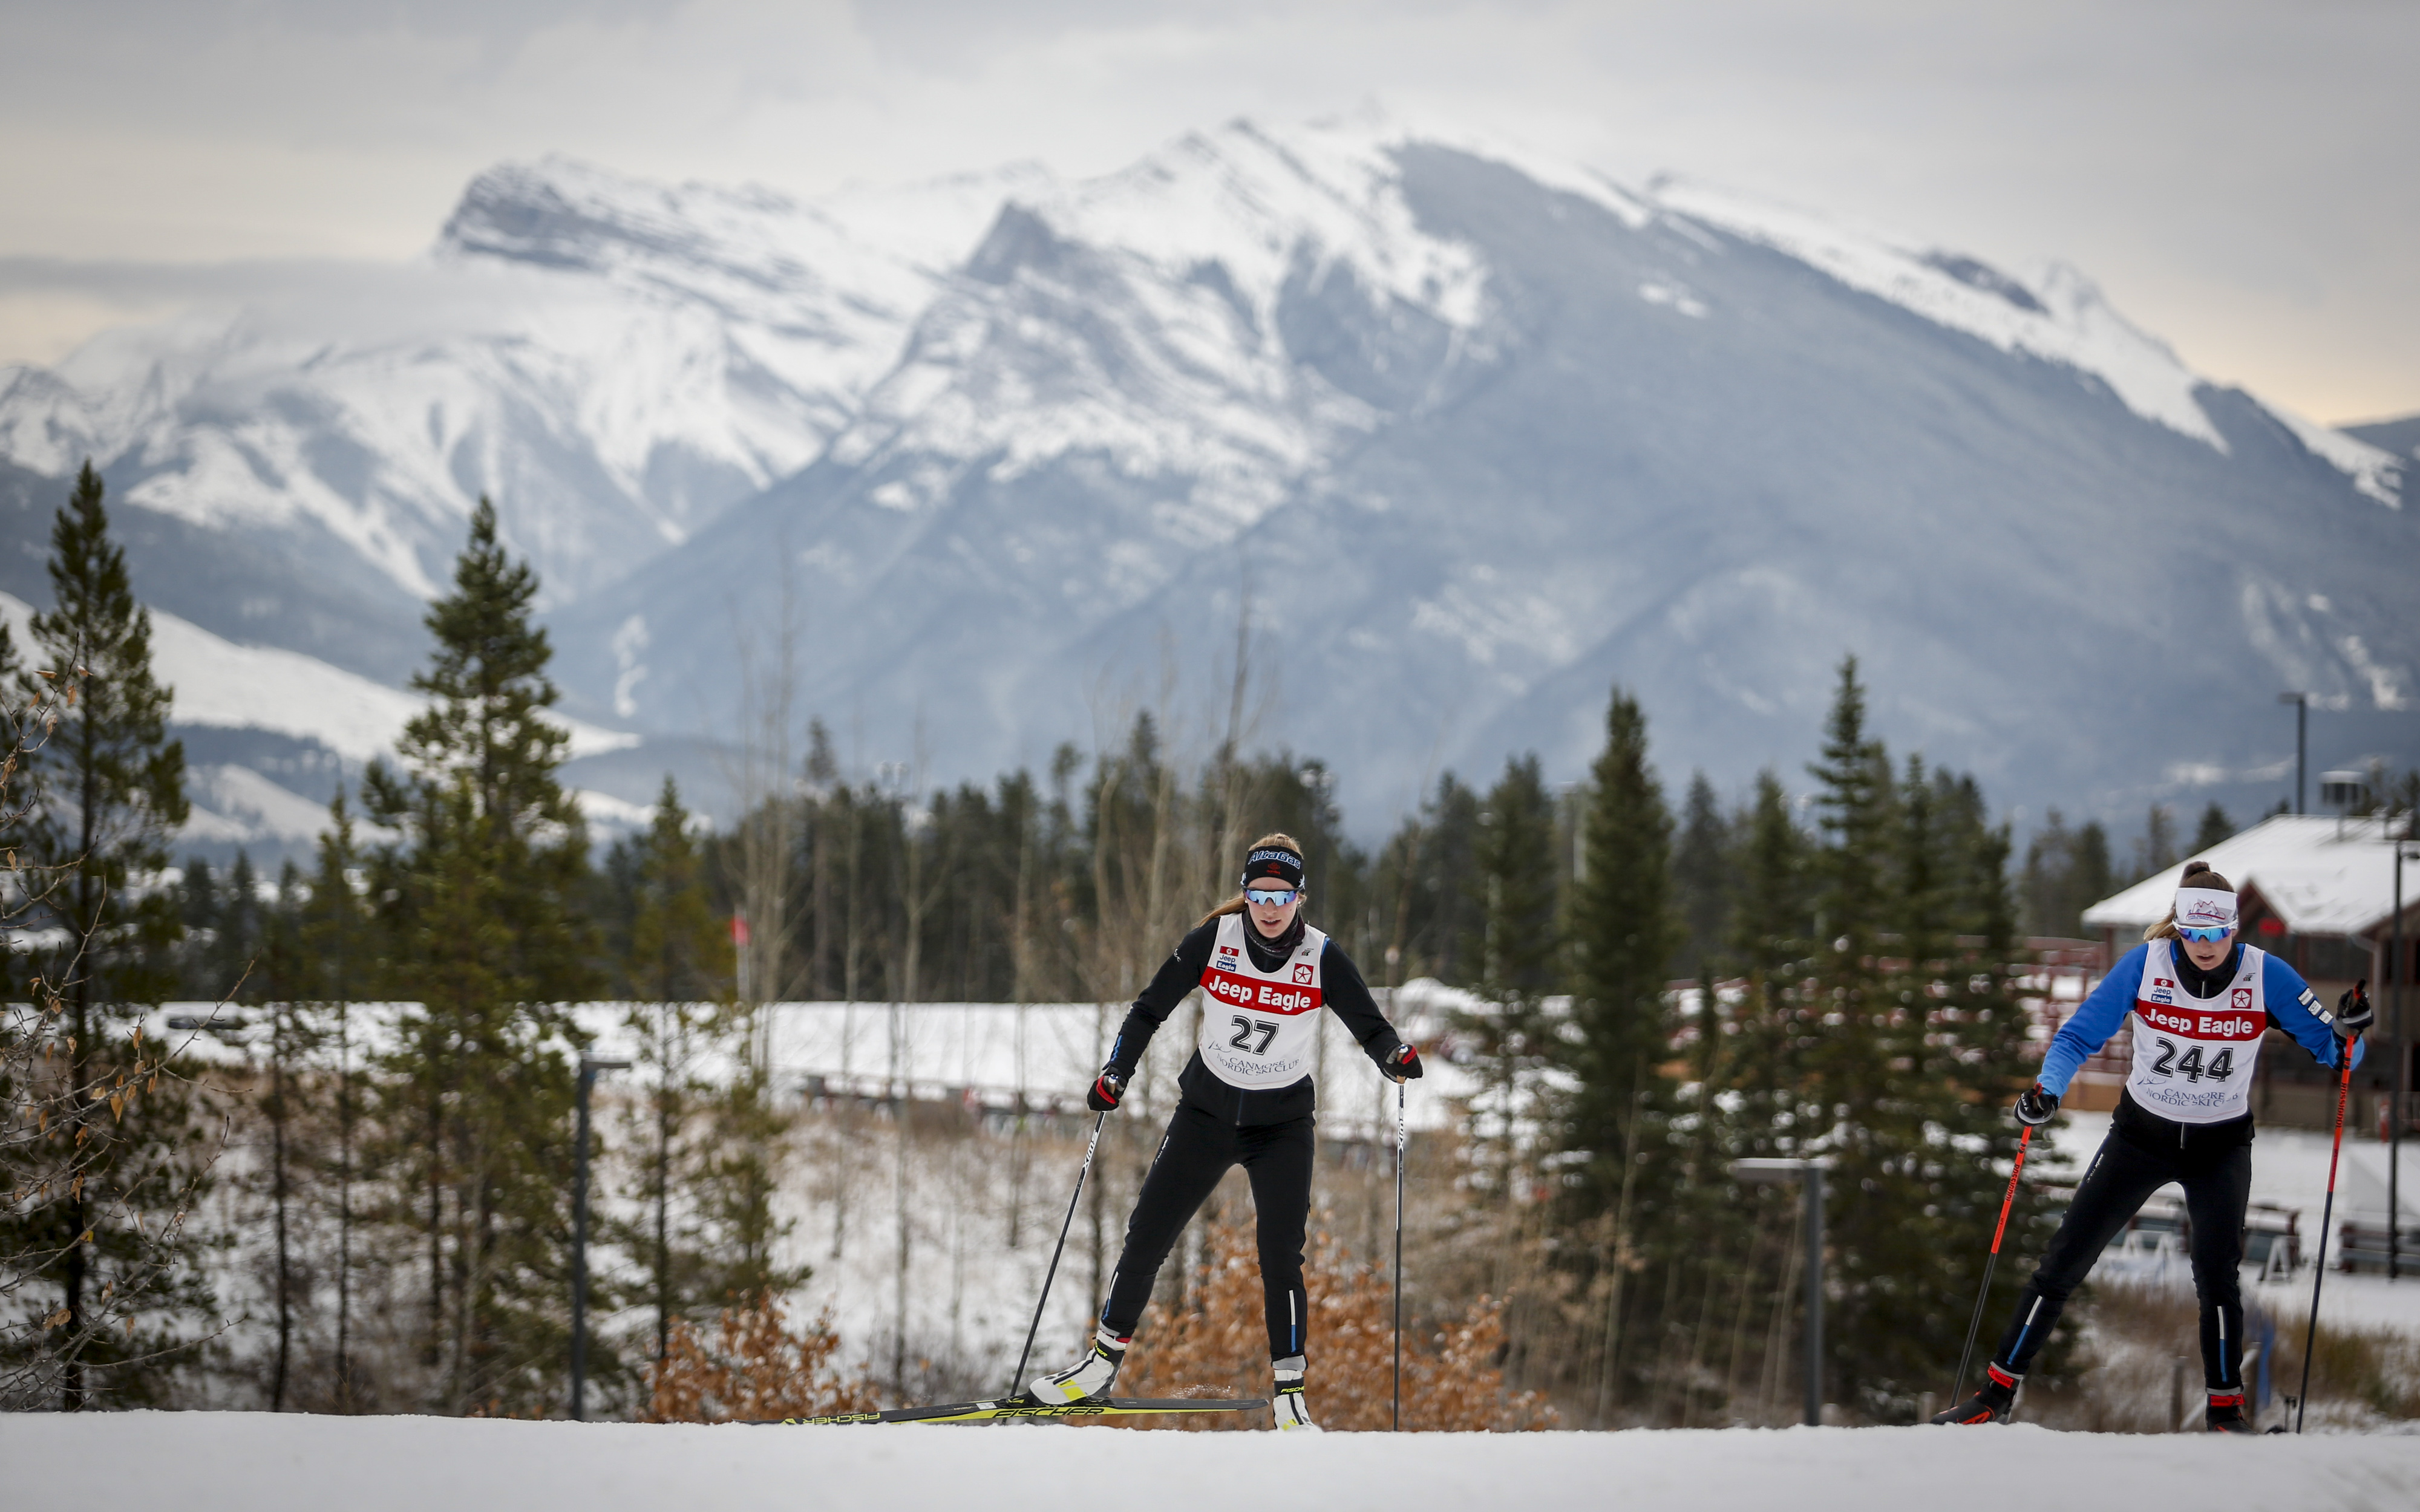 Les plus beaux endroits où faire du ski de fond au Canada - Équipe Canada